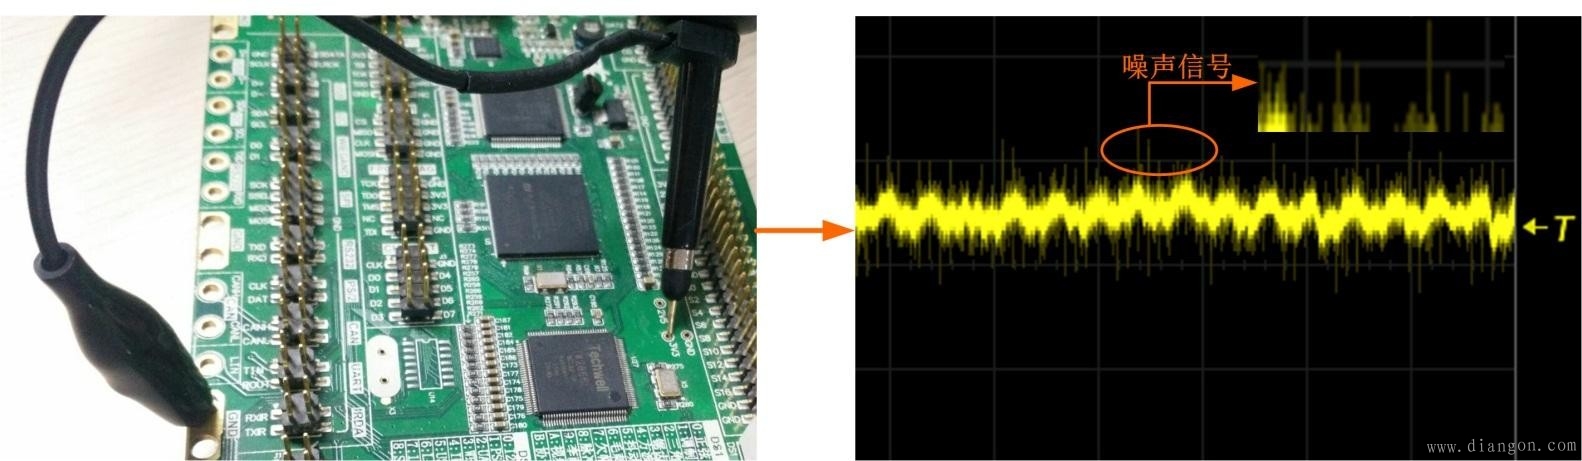 分享使用示波器測量電源紋波的方法